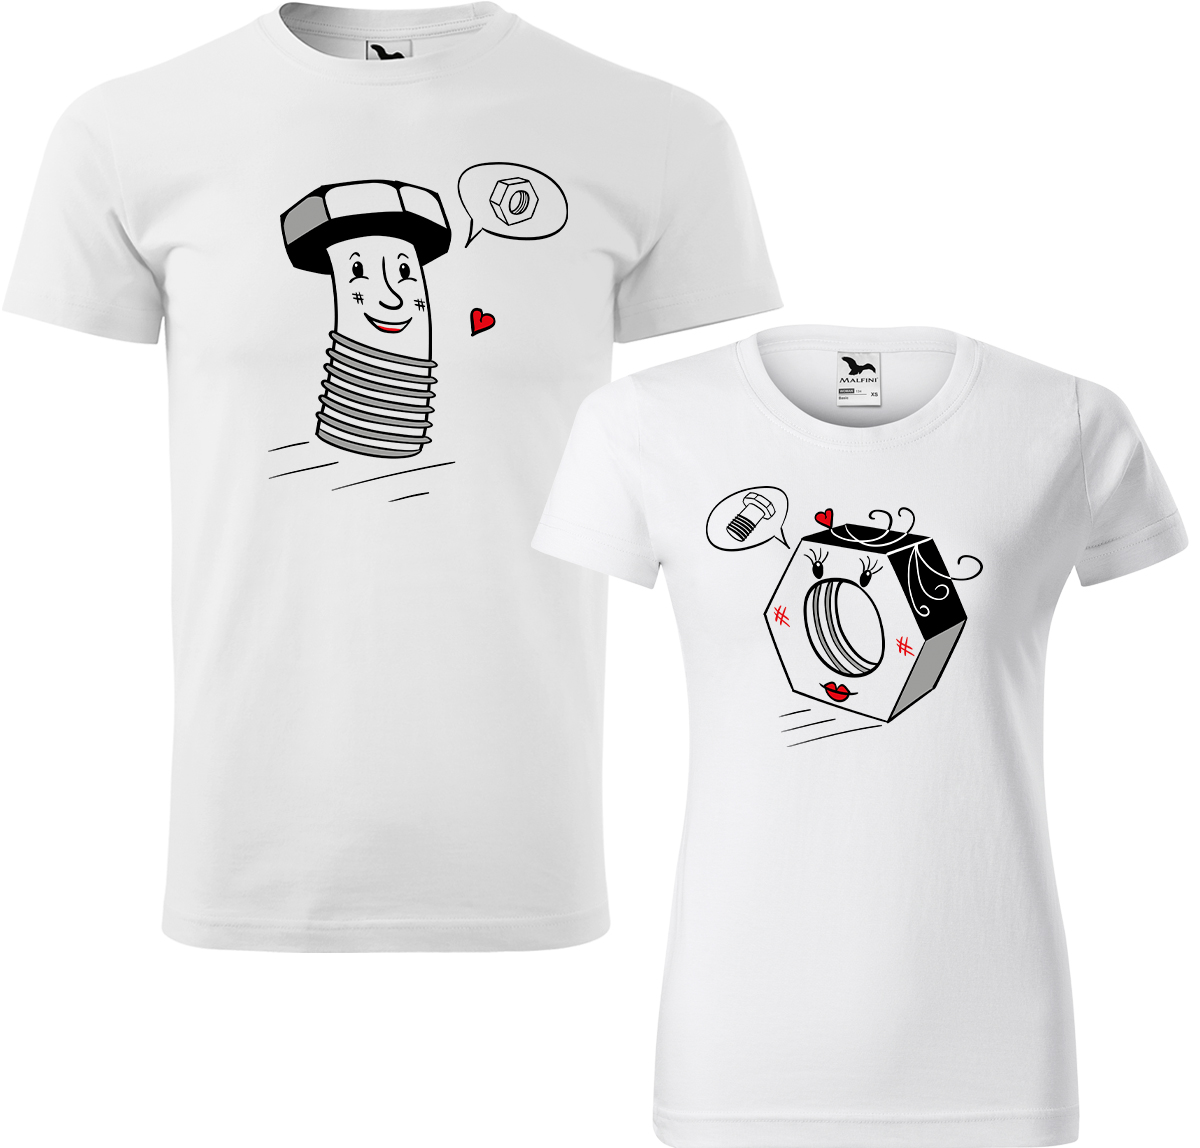 Trička pro páry - Šroubek a matička Barva: Bílá (00), Velikost dámské tričko: L, Velikost pánské tričko: XL